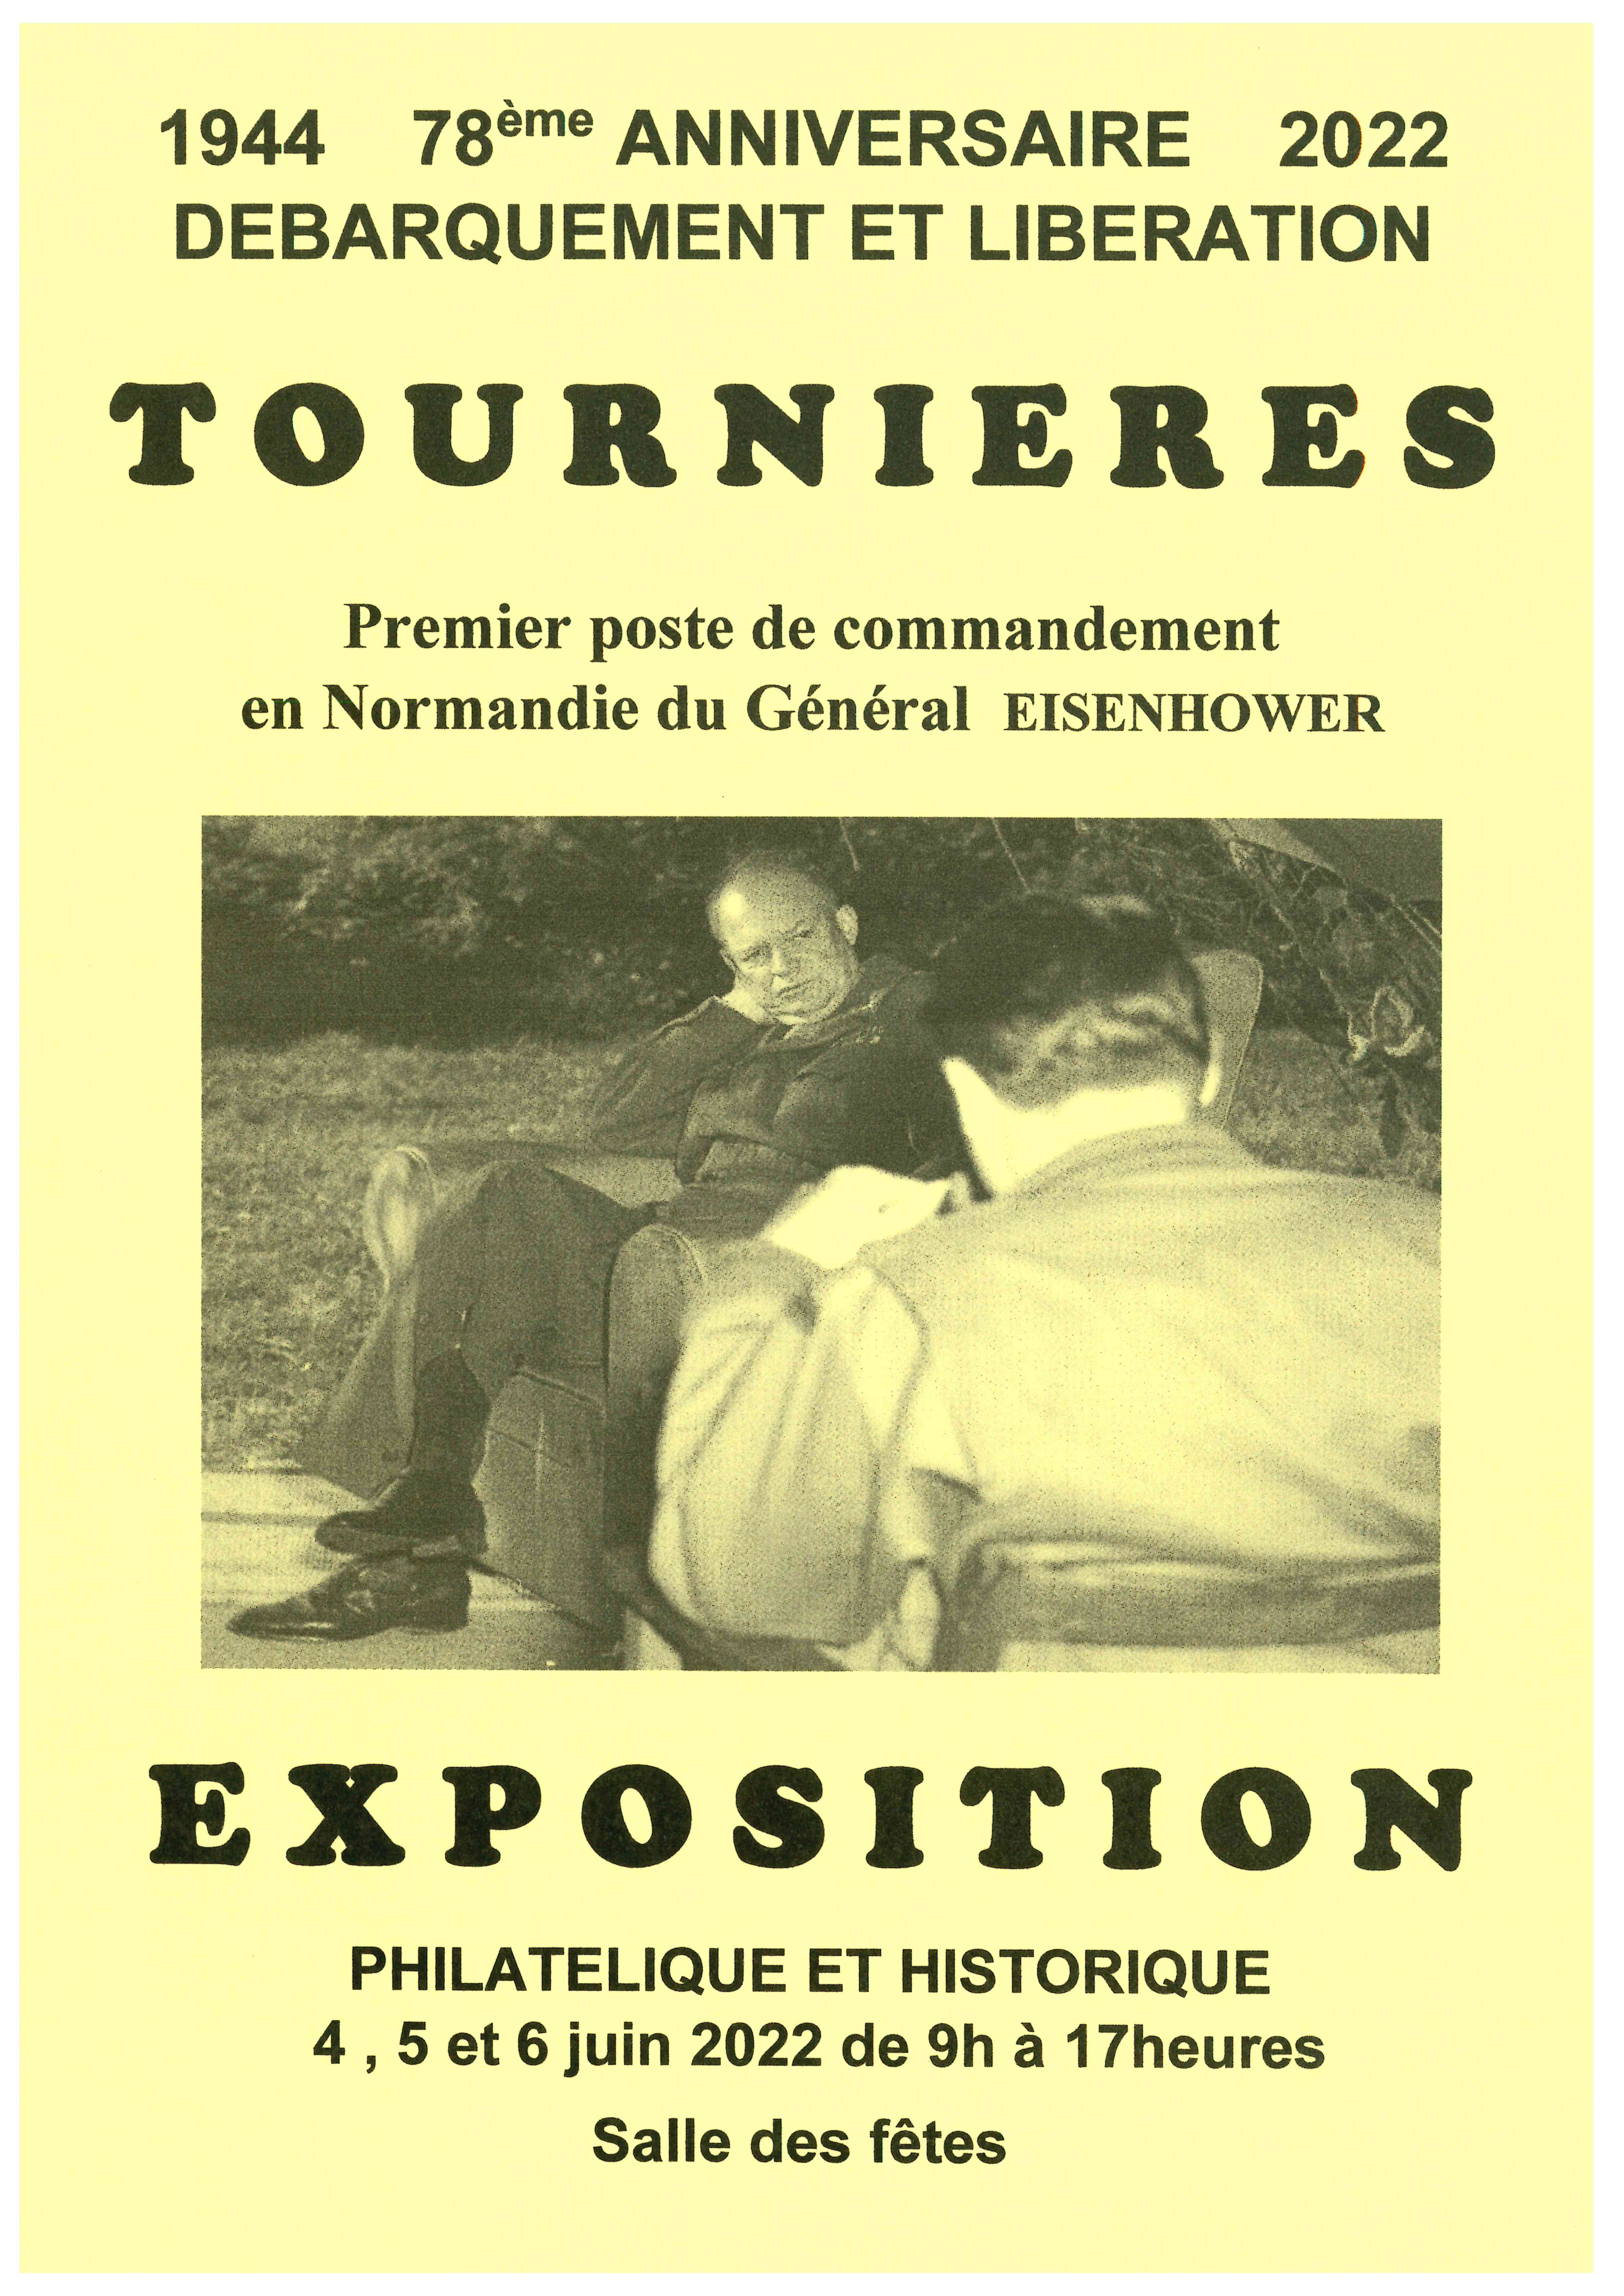   Expo Tournières 